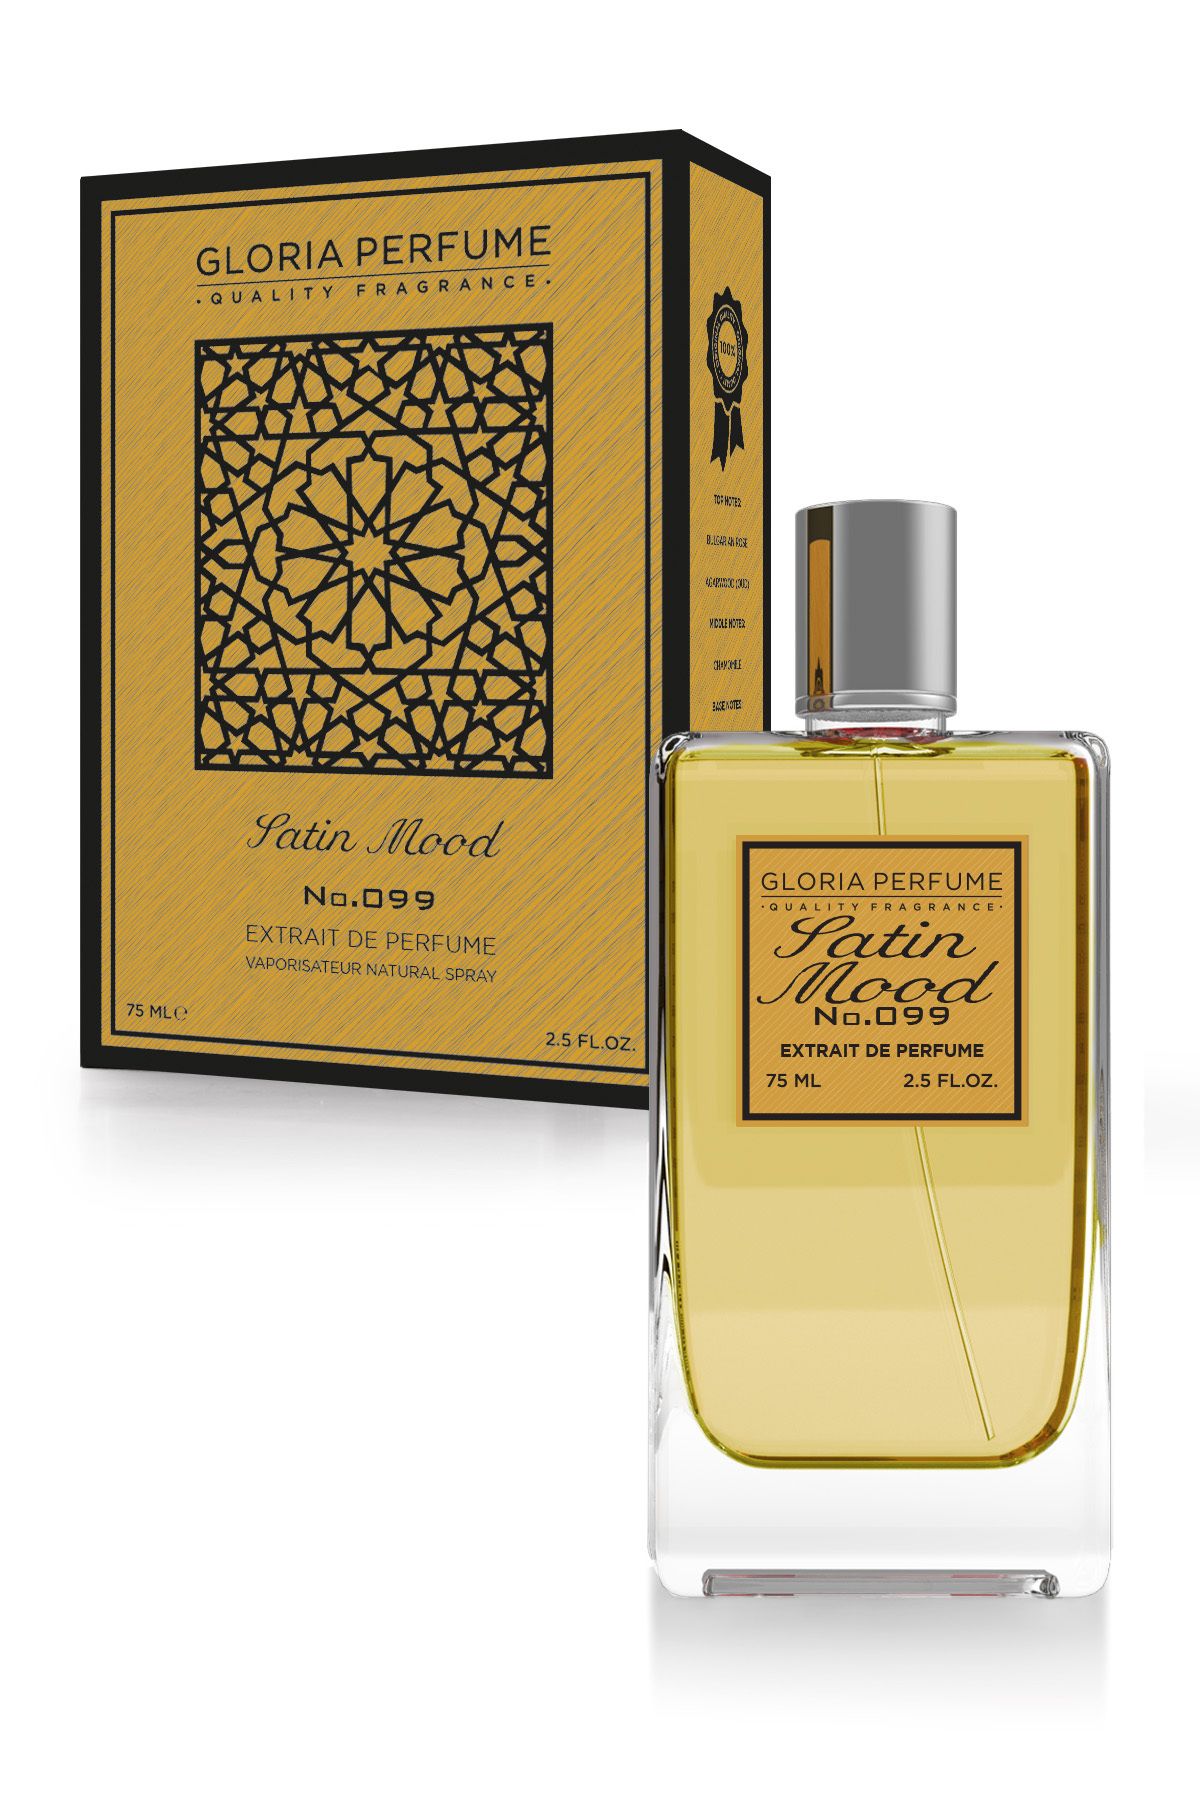 Gloria Perfume Satın Mood 75 Ml Edp Unisex Parfüm